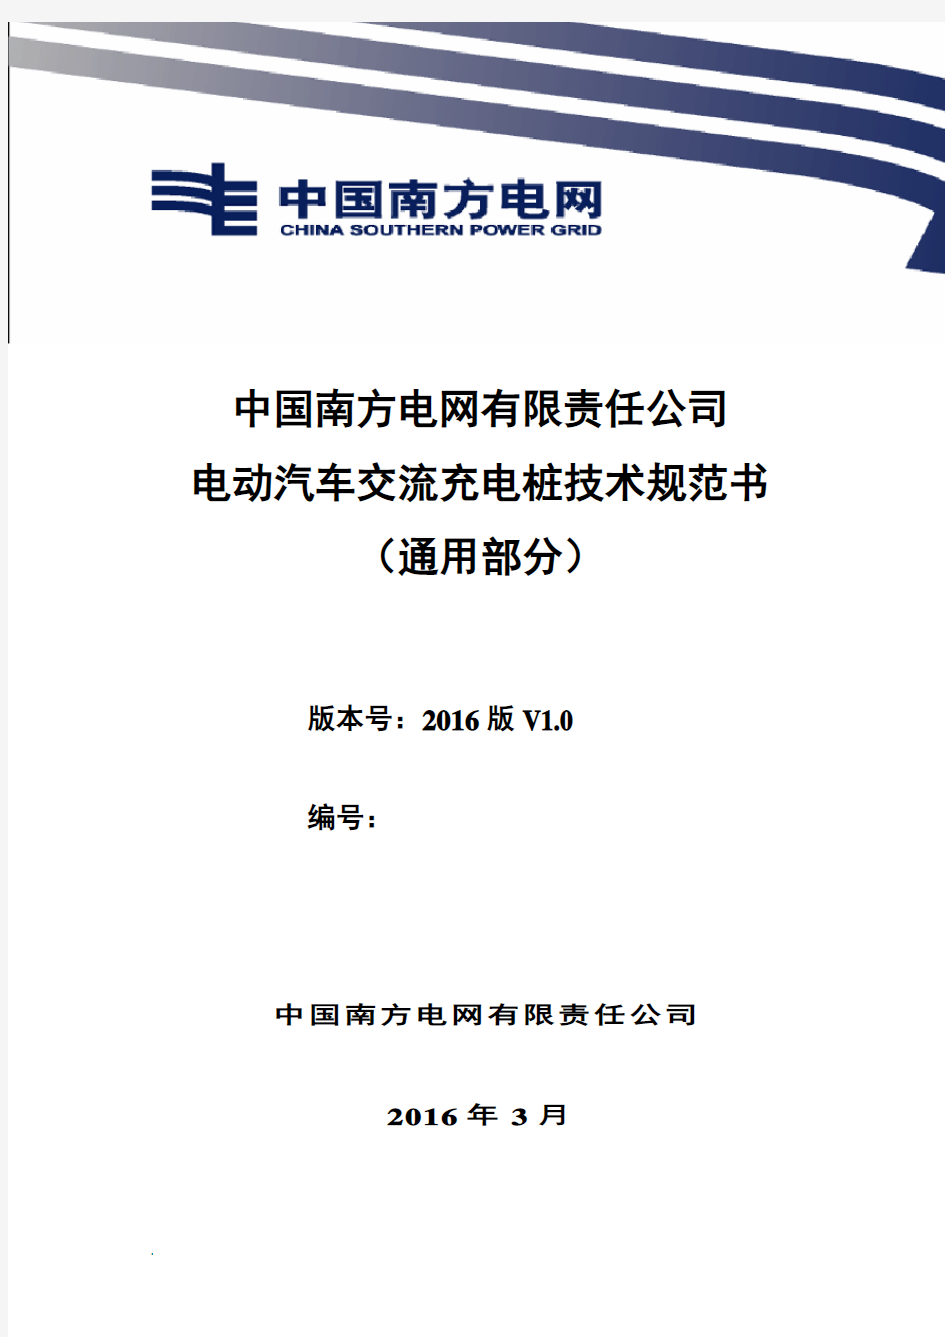 中国南方电网有限责任公司电动汽车交流充电桩技术规范书(通用部分)